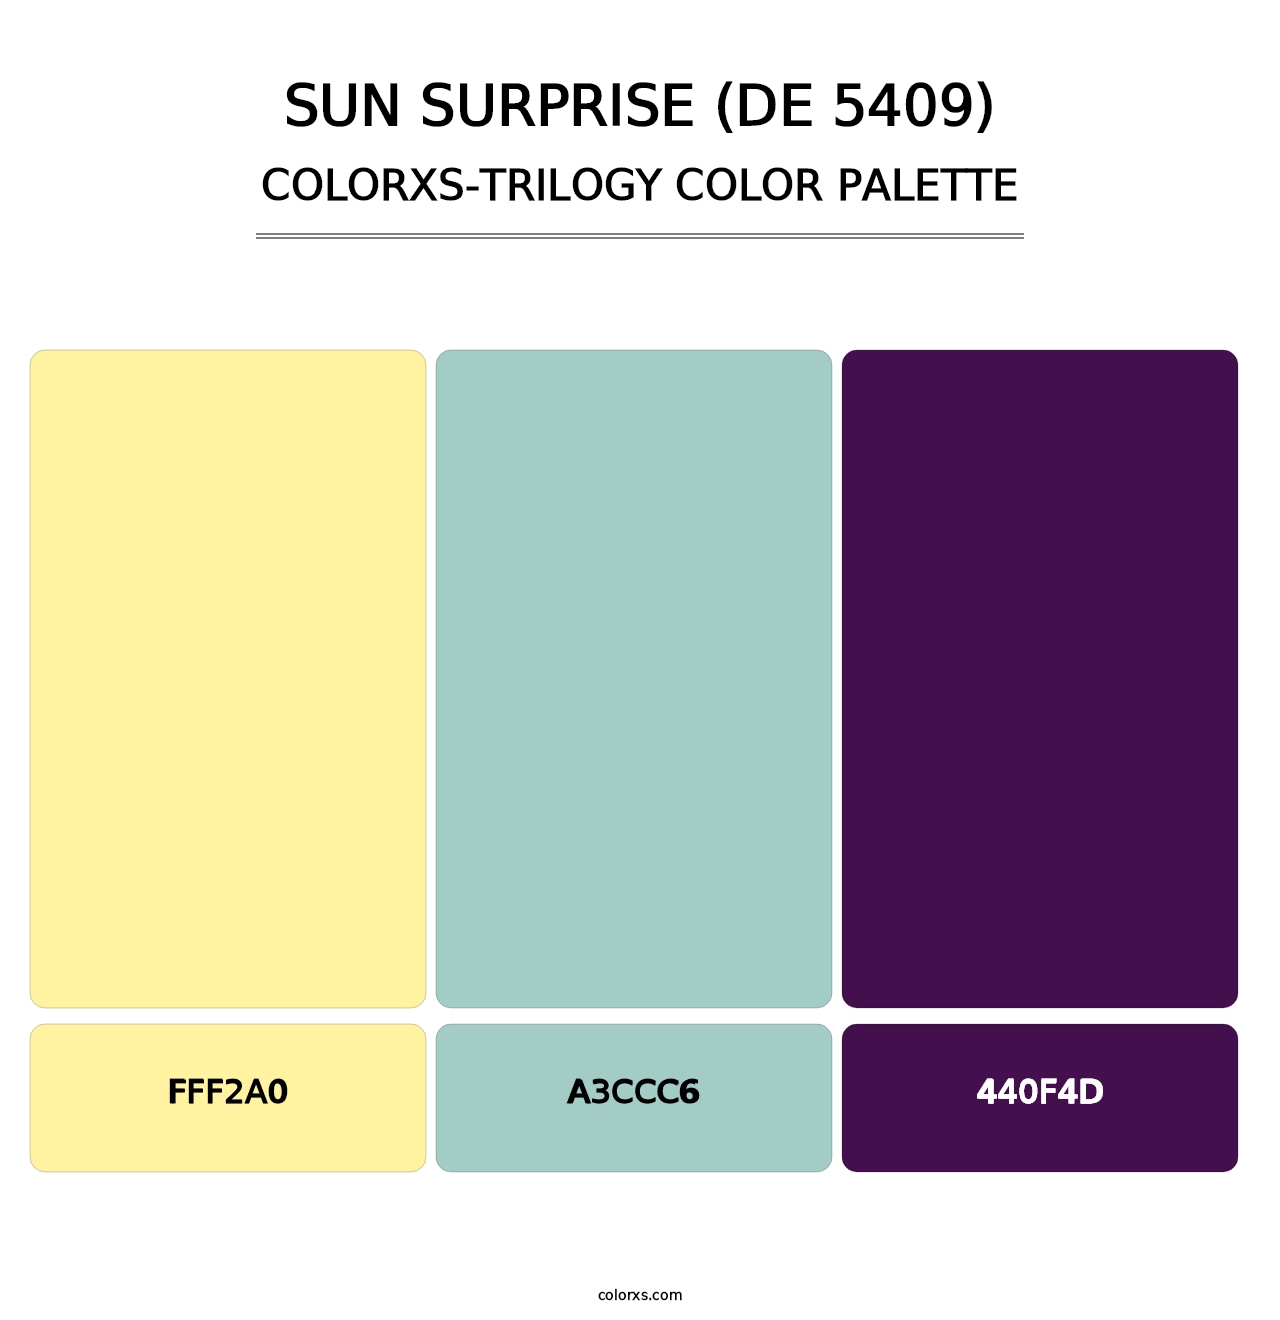 Sun Surprise (DE 5409) - Colorxs Trilogy Palette